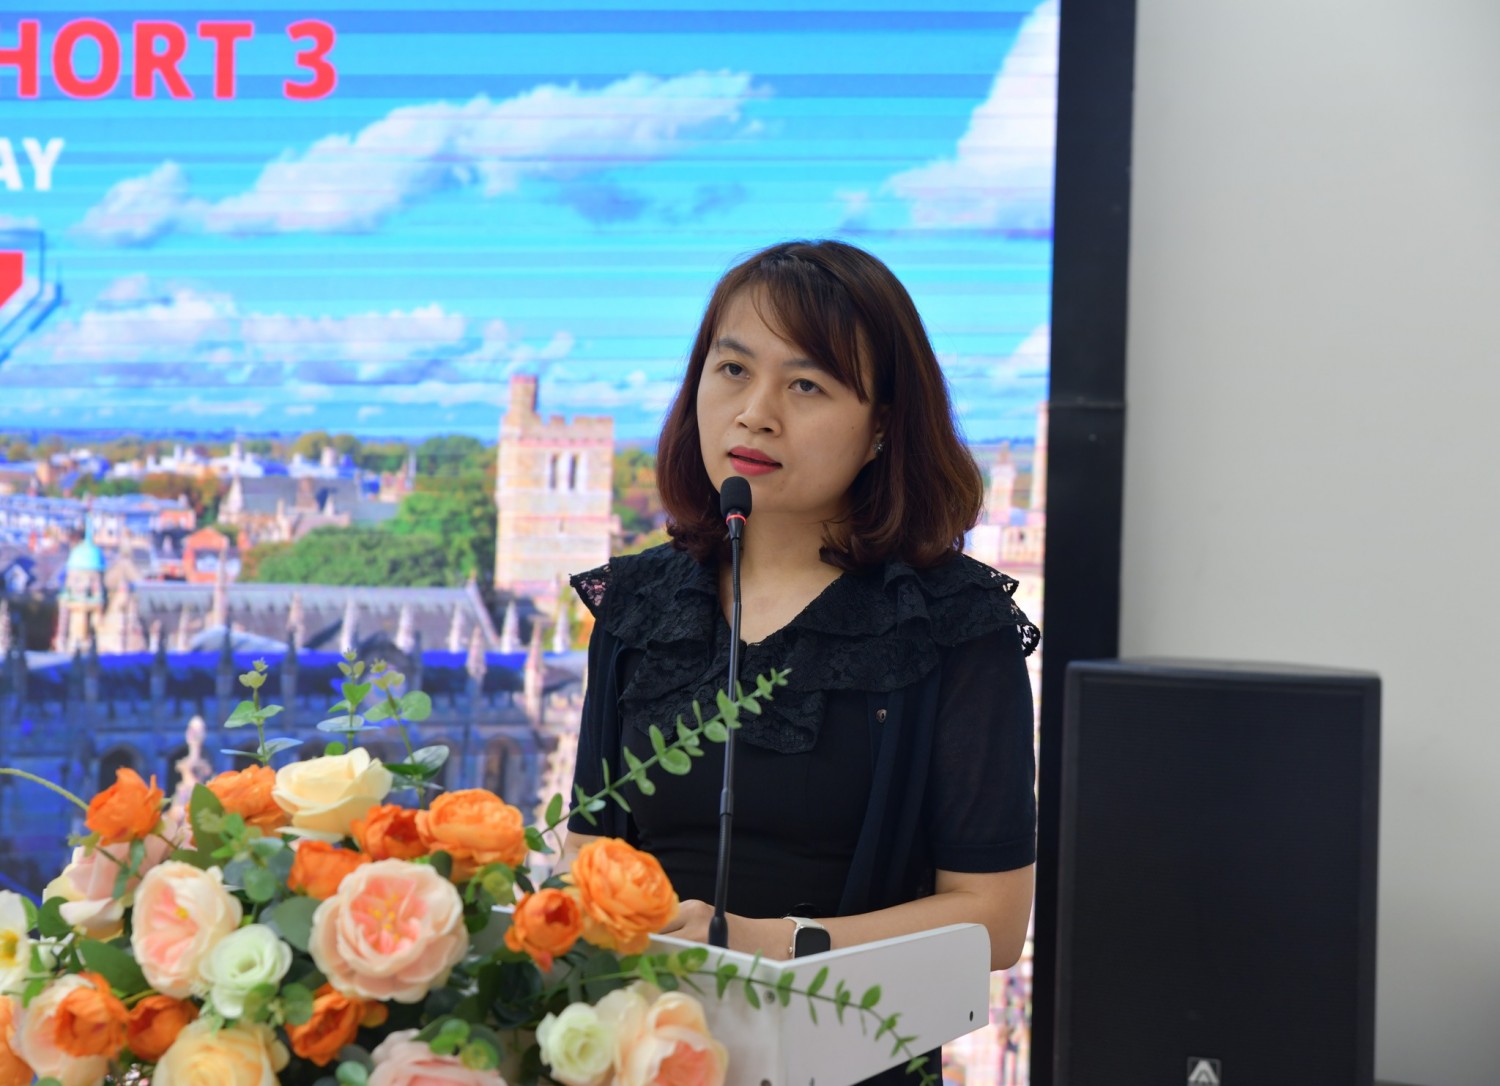 Chị Nguyễn Thị Lài, học viên Khóa 3 chương trình Thạc sĩ FINTECH